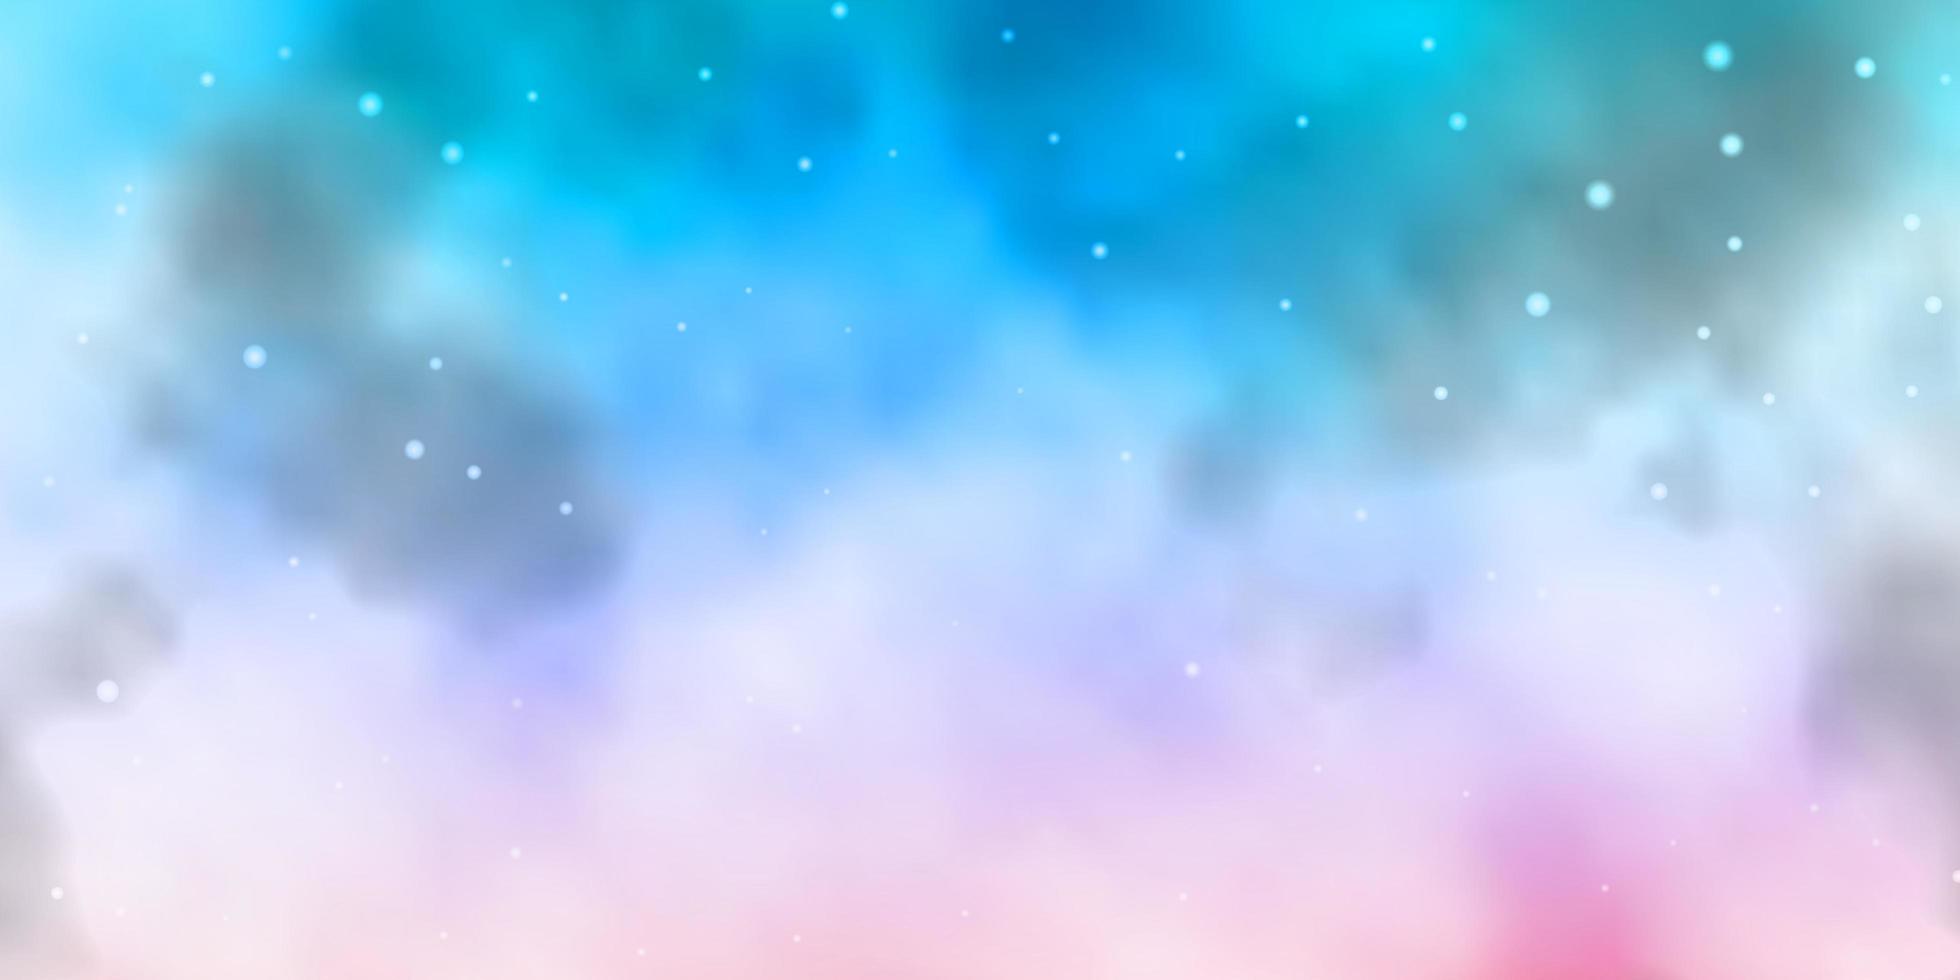 ljusblå, rosa bakgrund med färgglada stjärnor. vektor